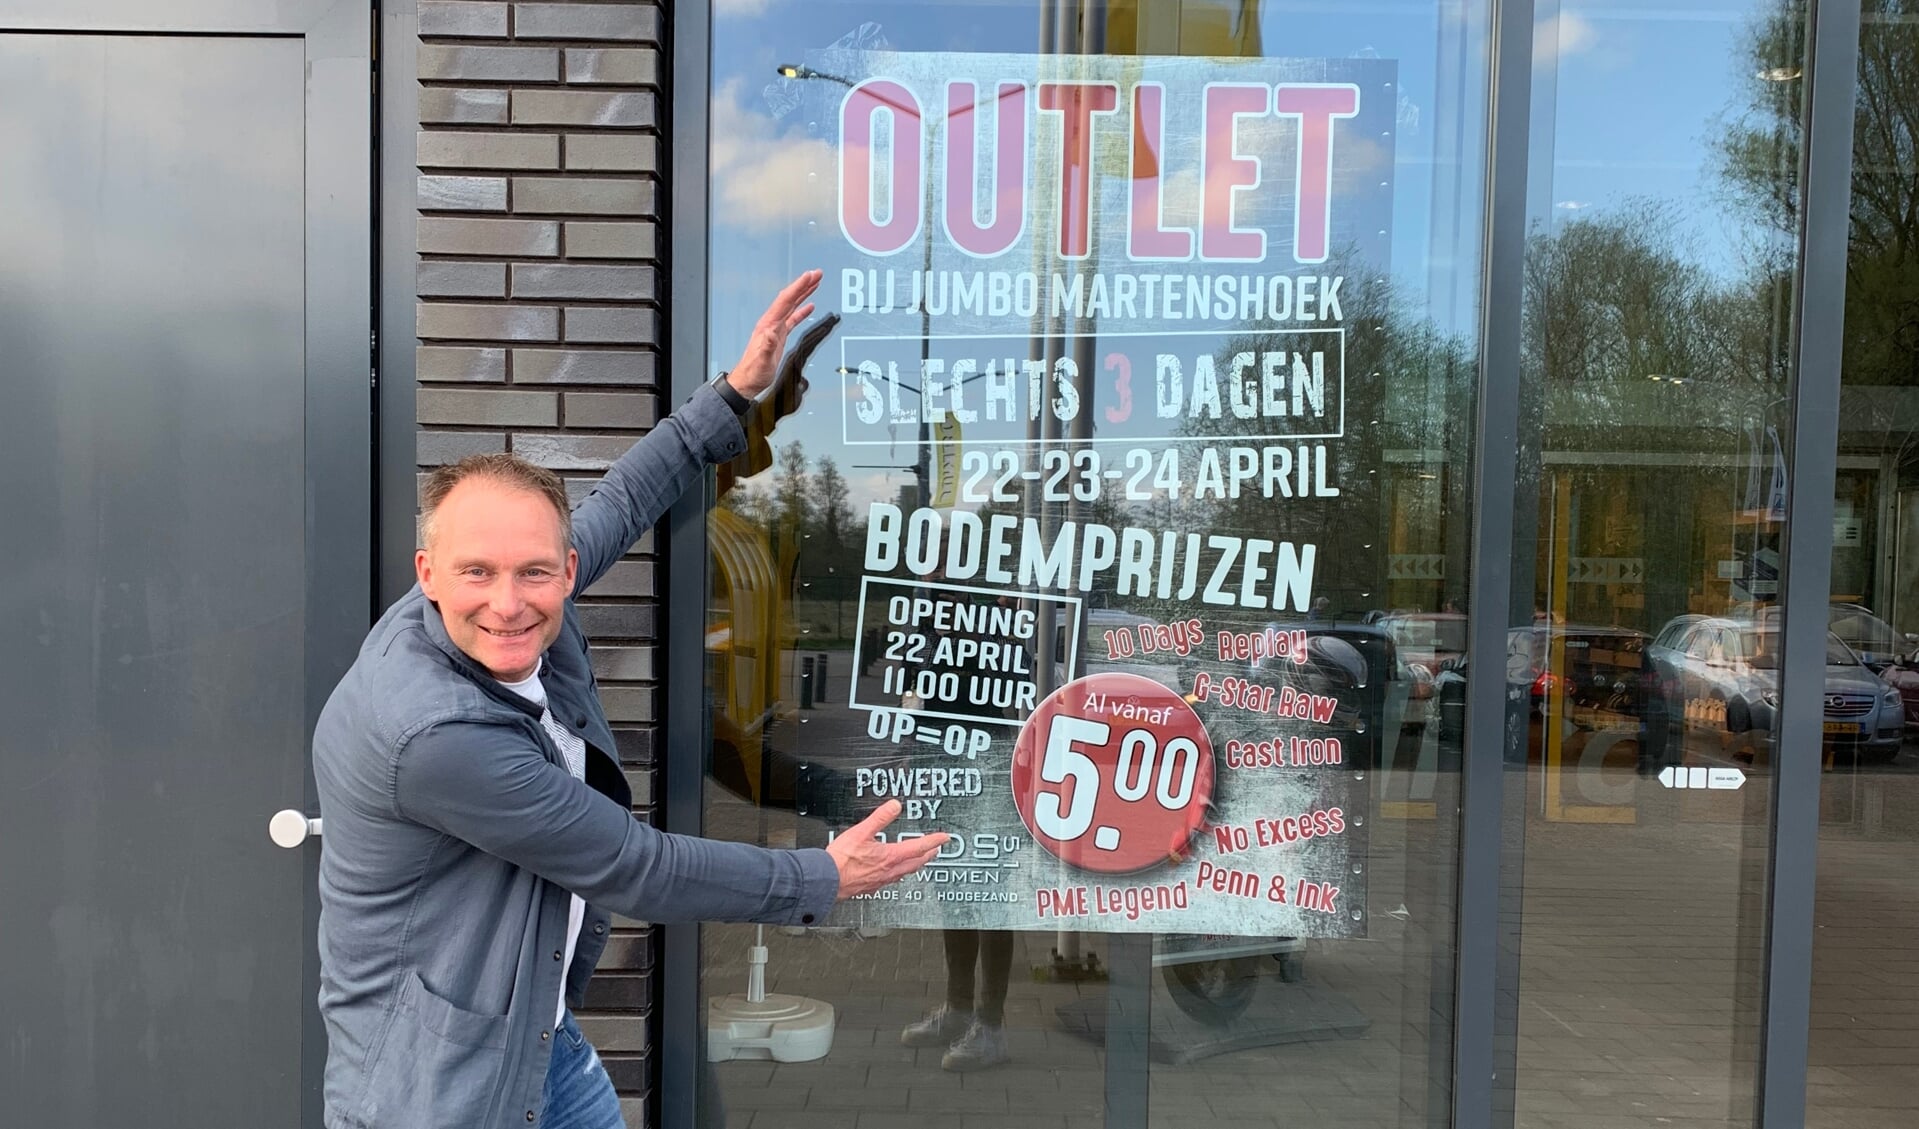 Remie Groeneveld bevestigt een poster van de outlet bij Jumbo in Martenshoek.